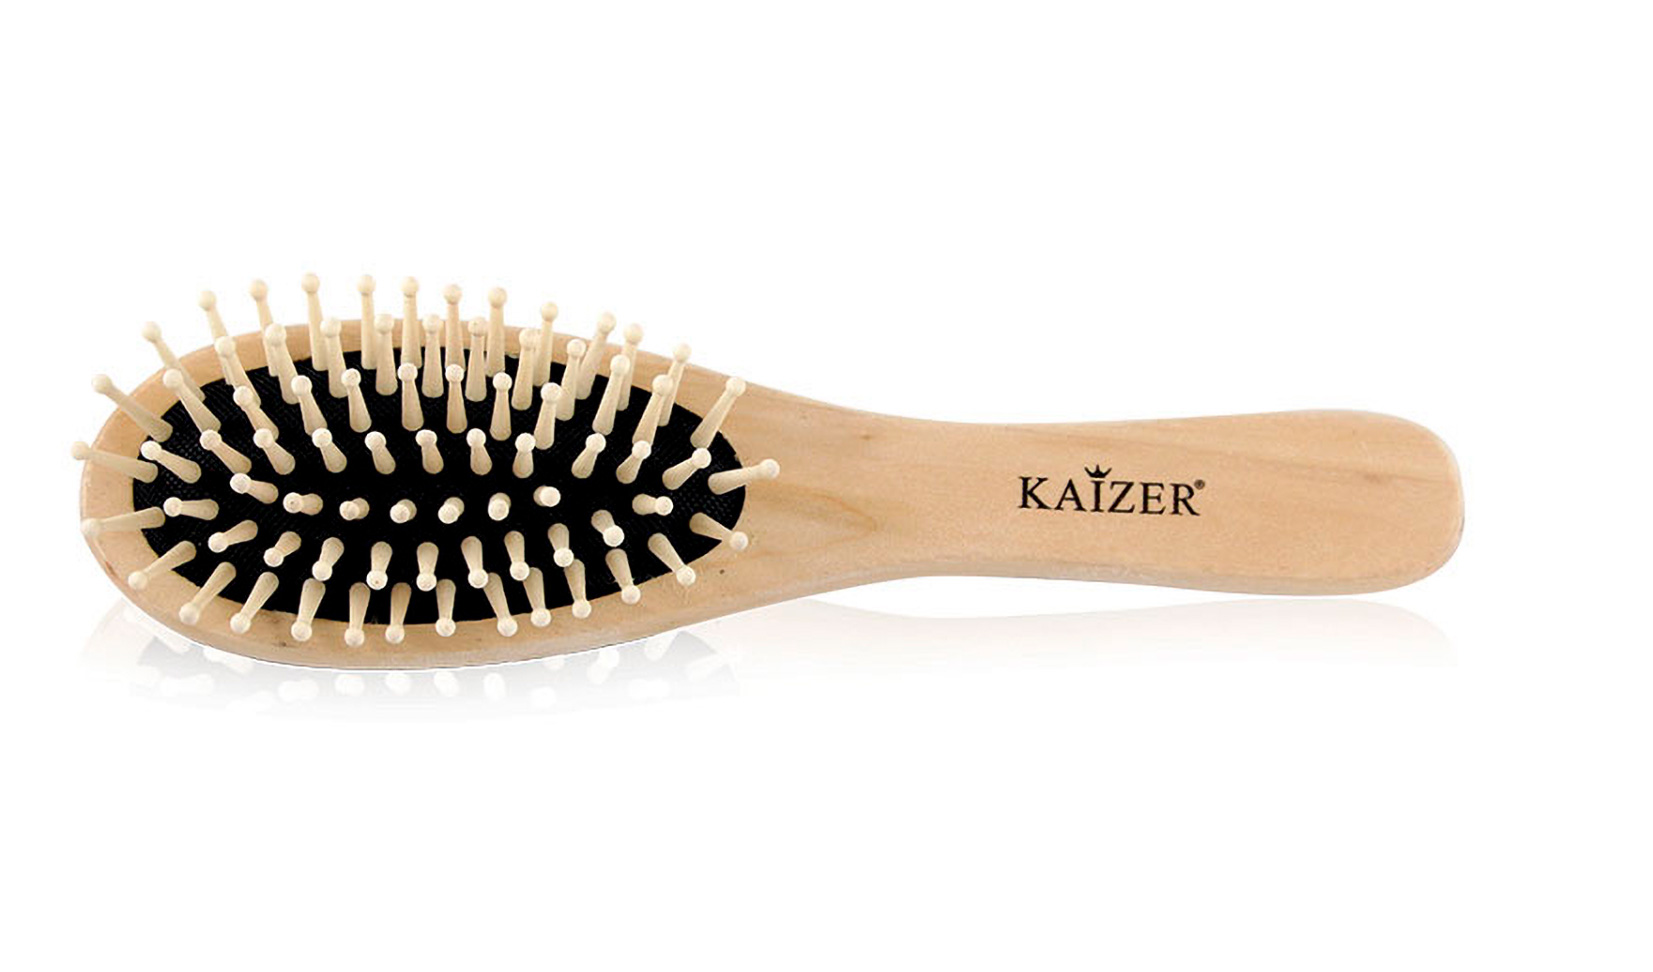 Купить Расческа для волос Kaizer массажная большая, Kaiser